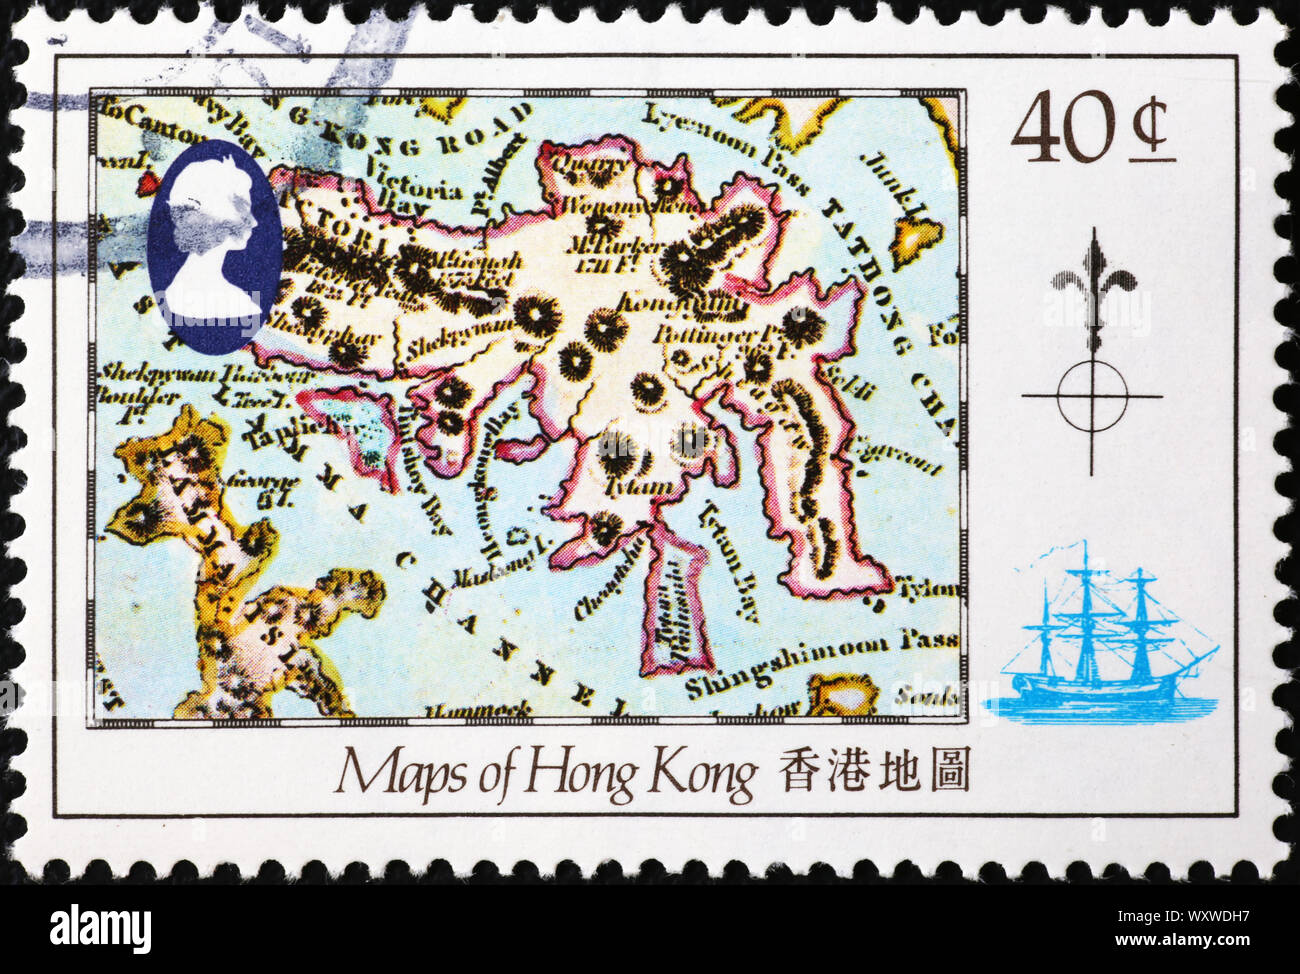 Antike Karte von Hong Kong auf Briefmarke Stockfotografie - Alamy